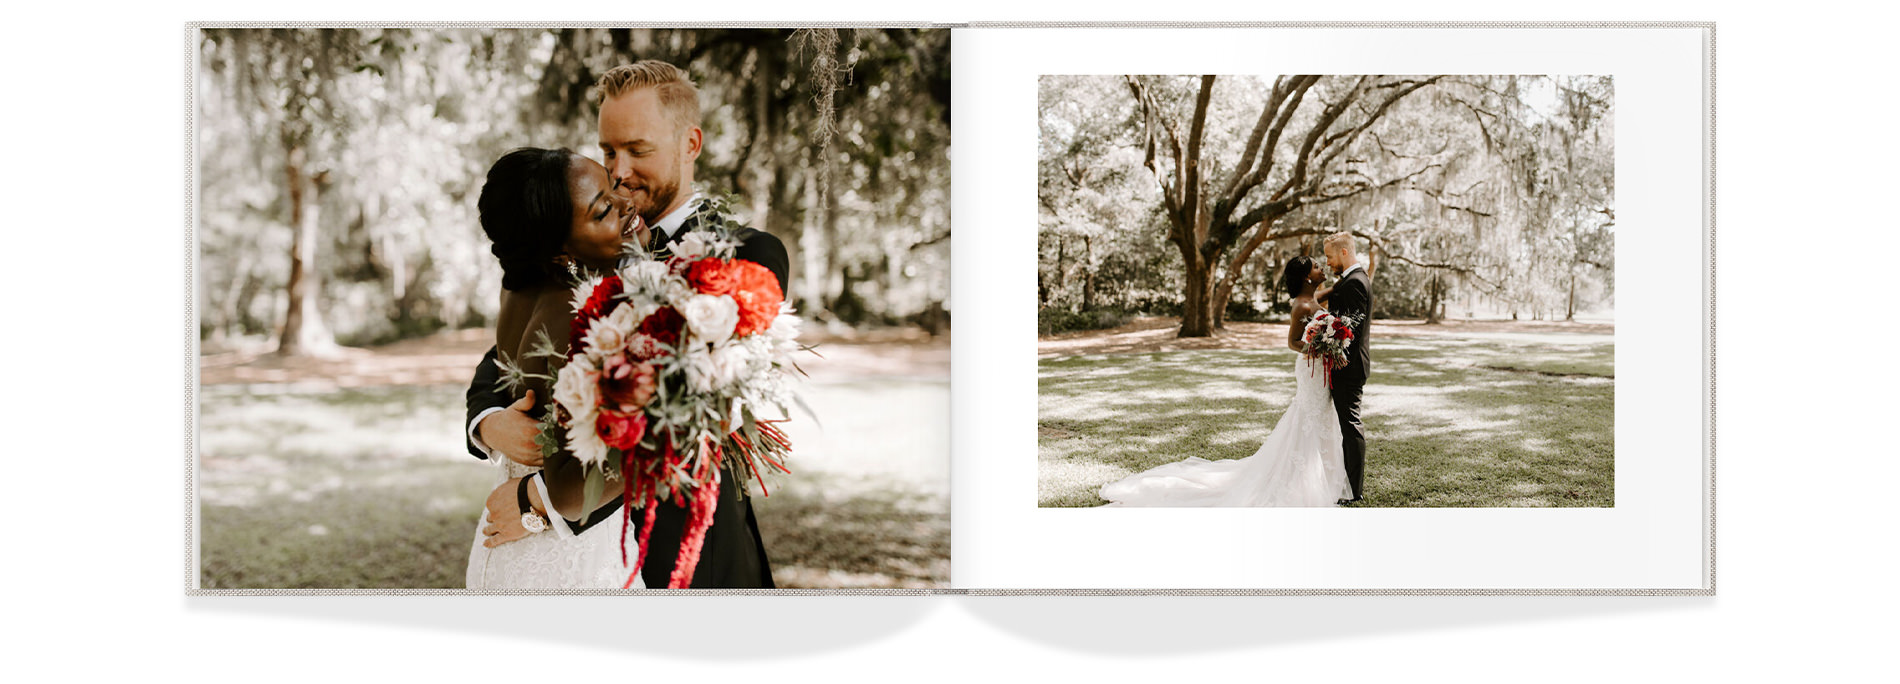 Retratos de recién casados con un llamativo ramo de flores rojas y blancas.